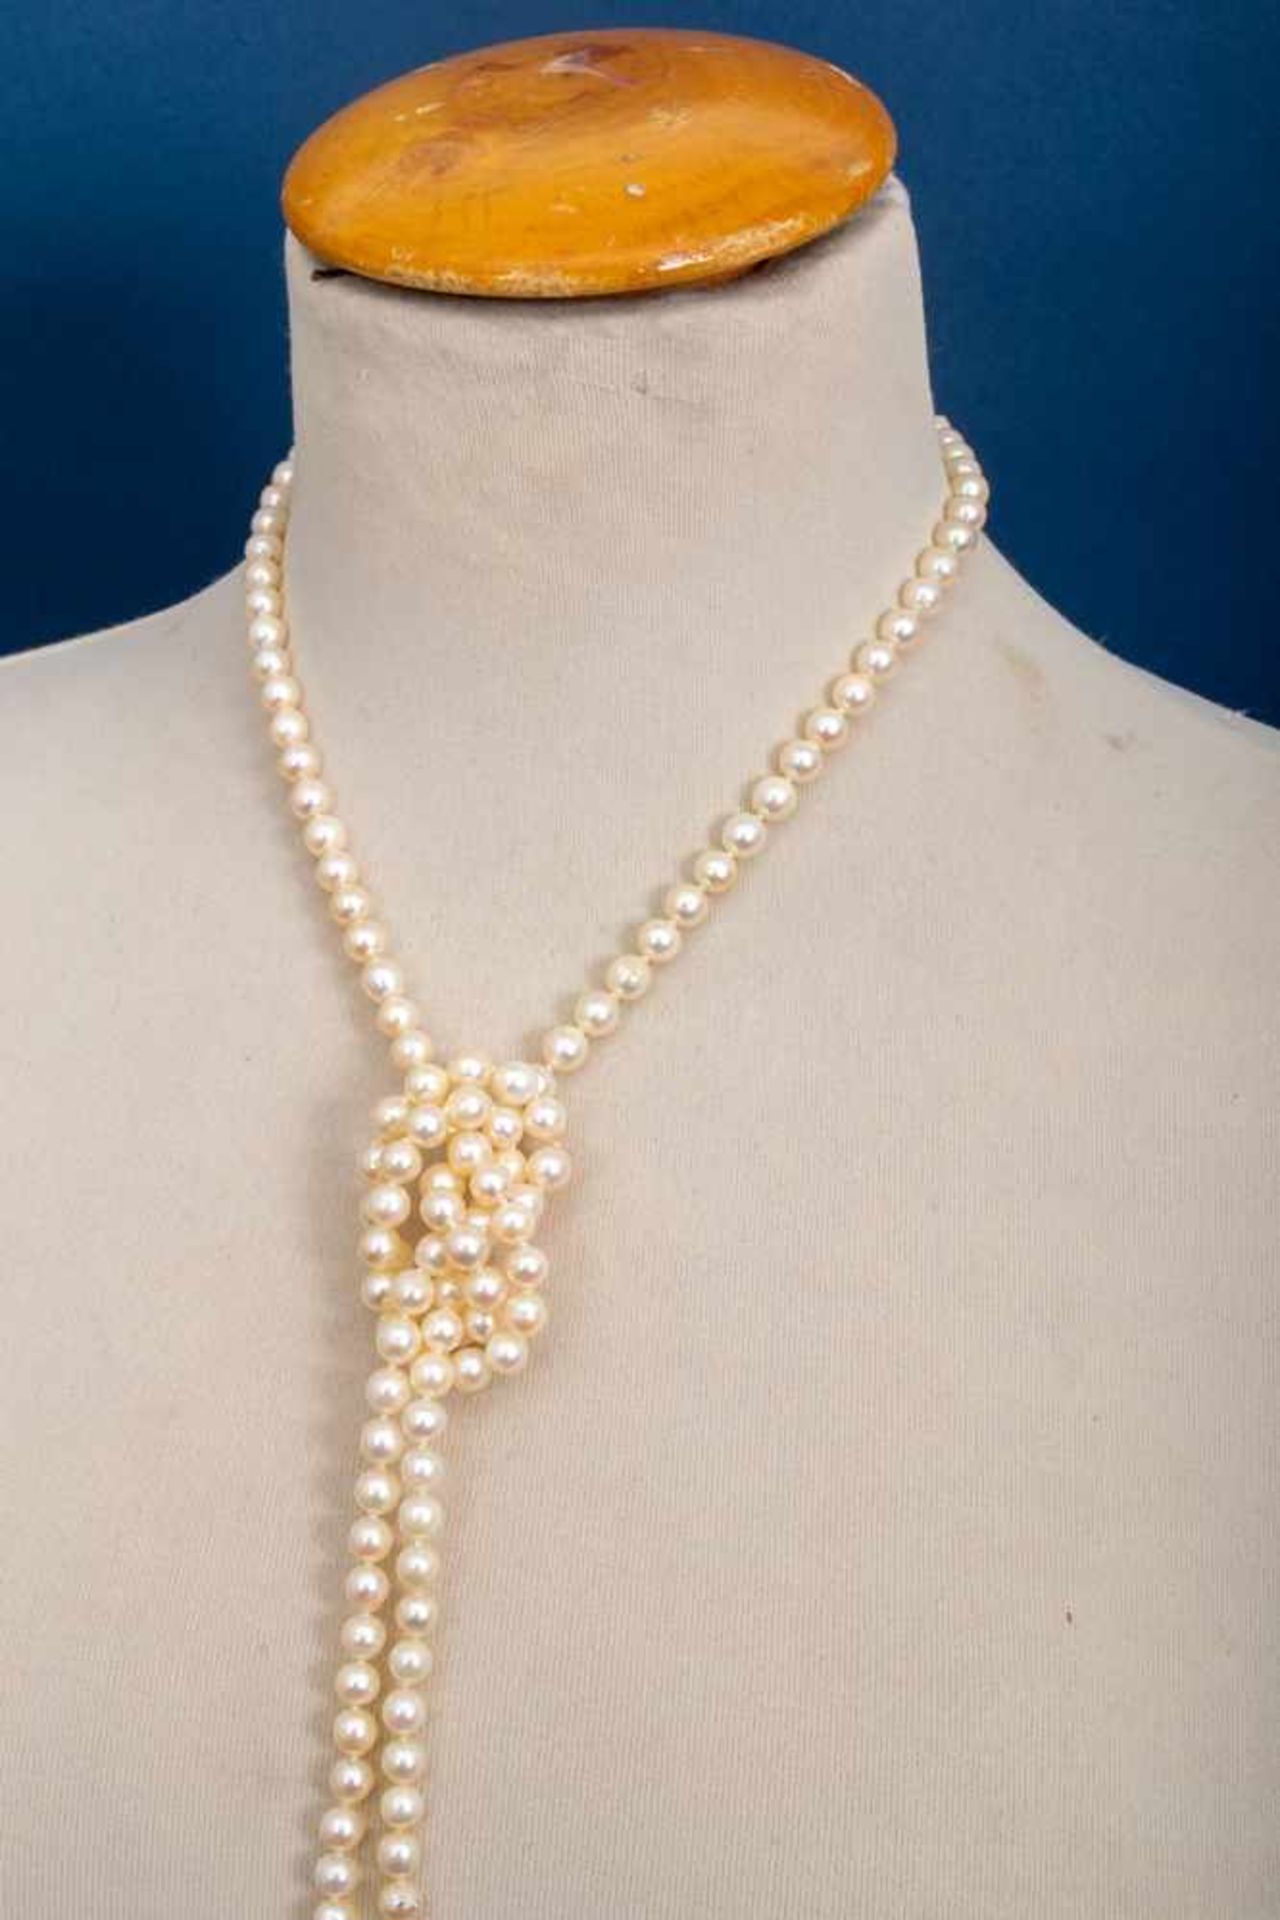 Lange Perlenkette, ca. 125 cm, Durchmesser der einzeln geknoteten Perlen ca. 6 mm.- - -20.00 % - Image 6 of 7